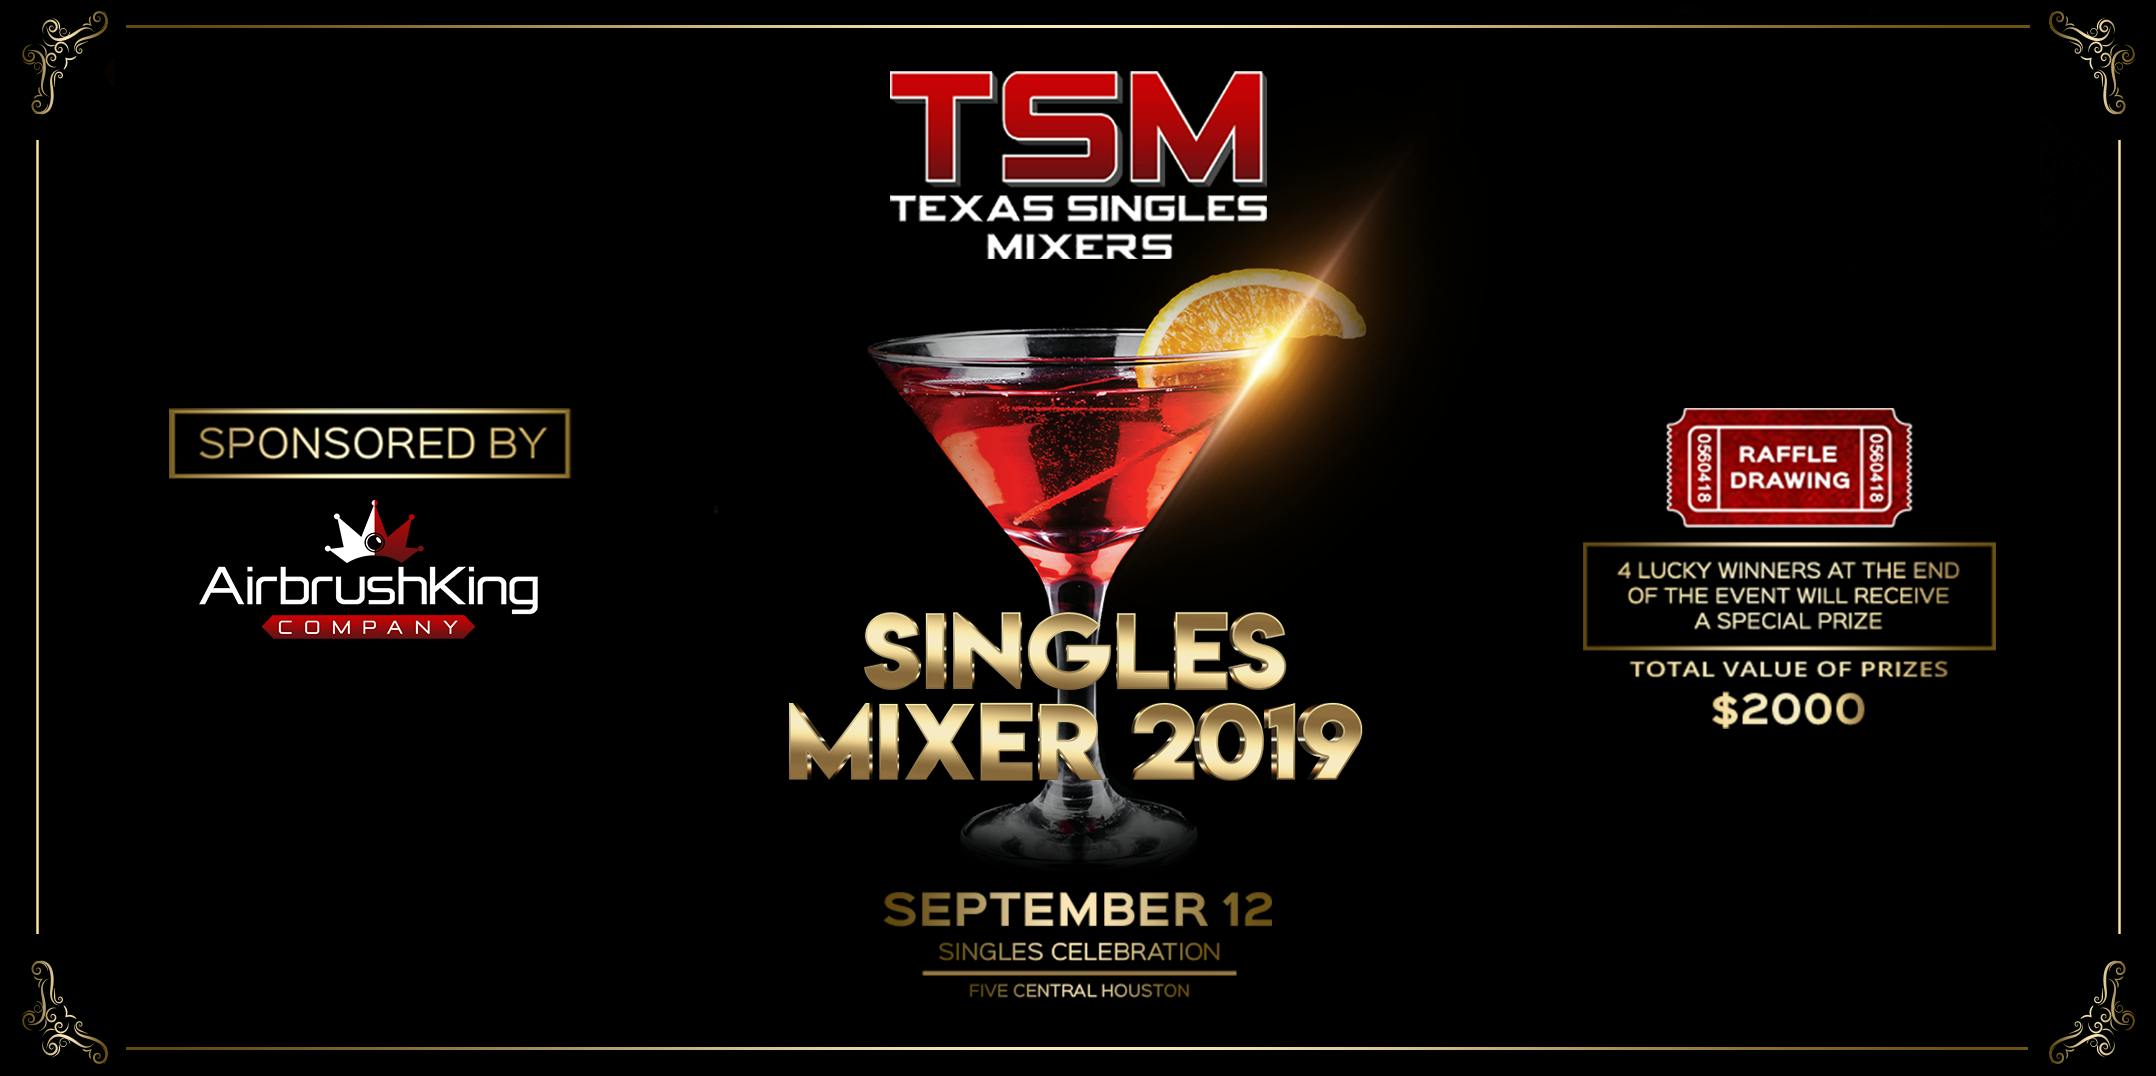 Texas Singles Mixer 2019